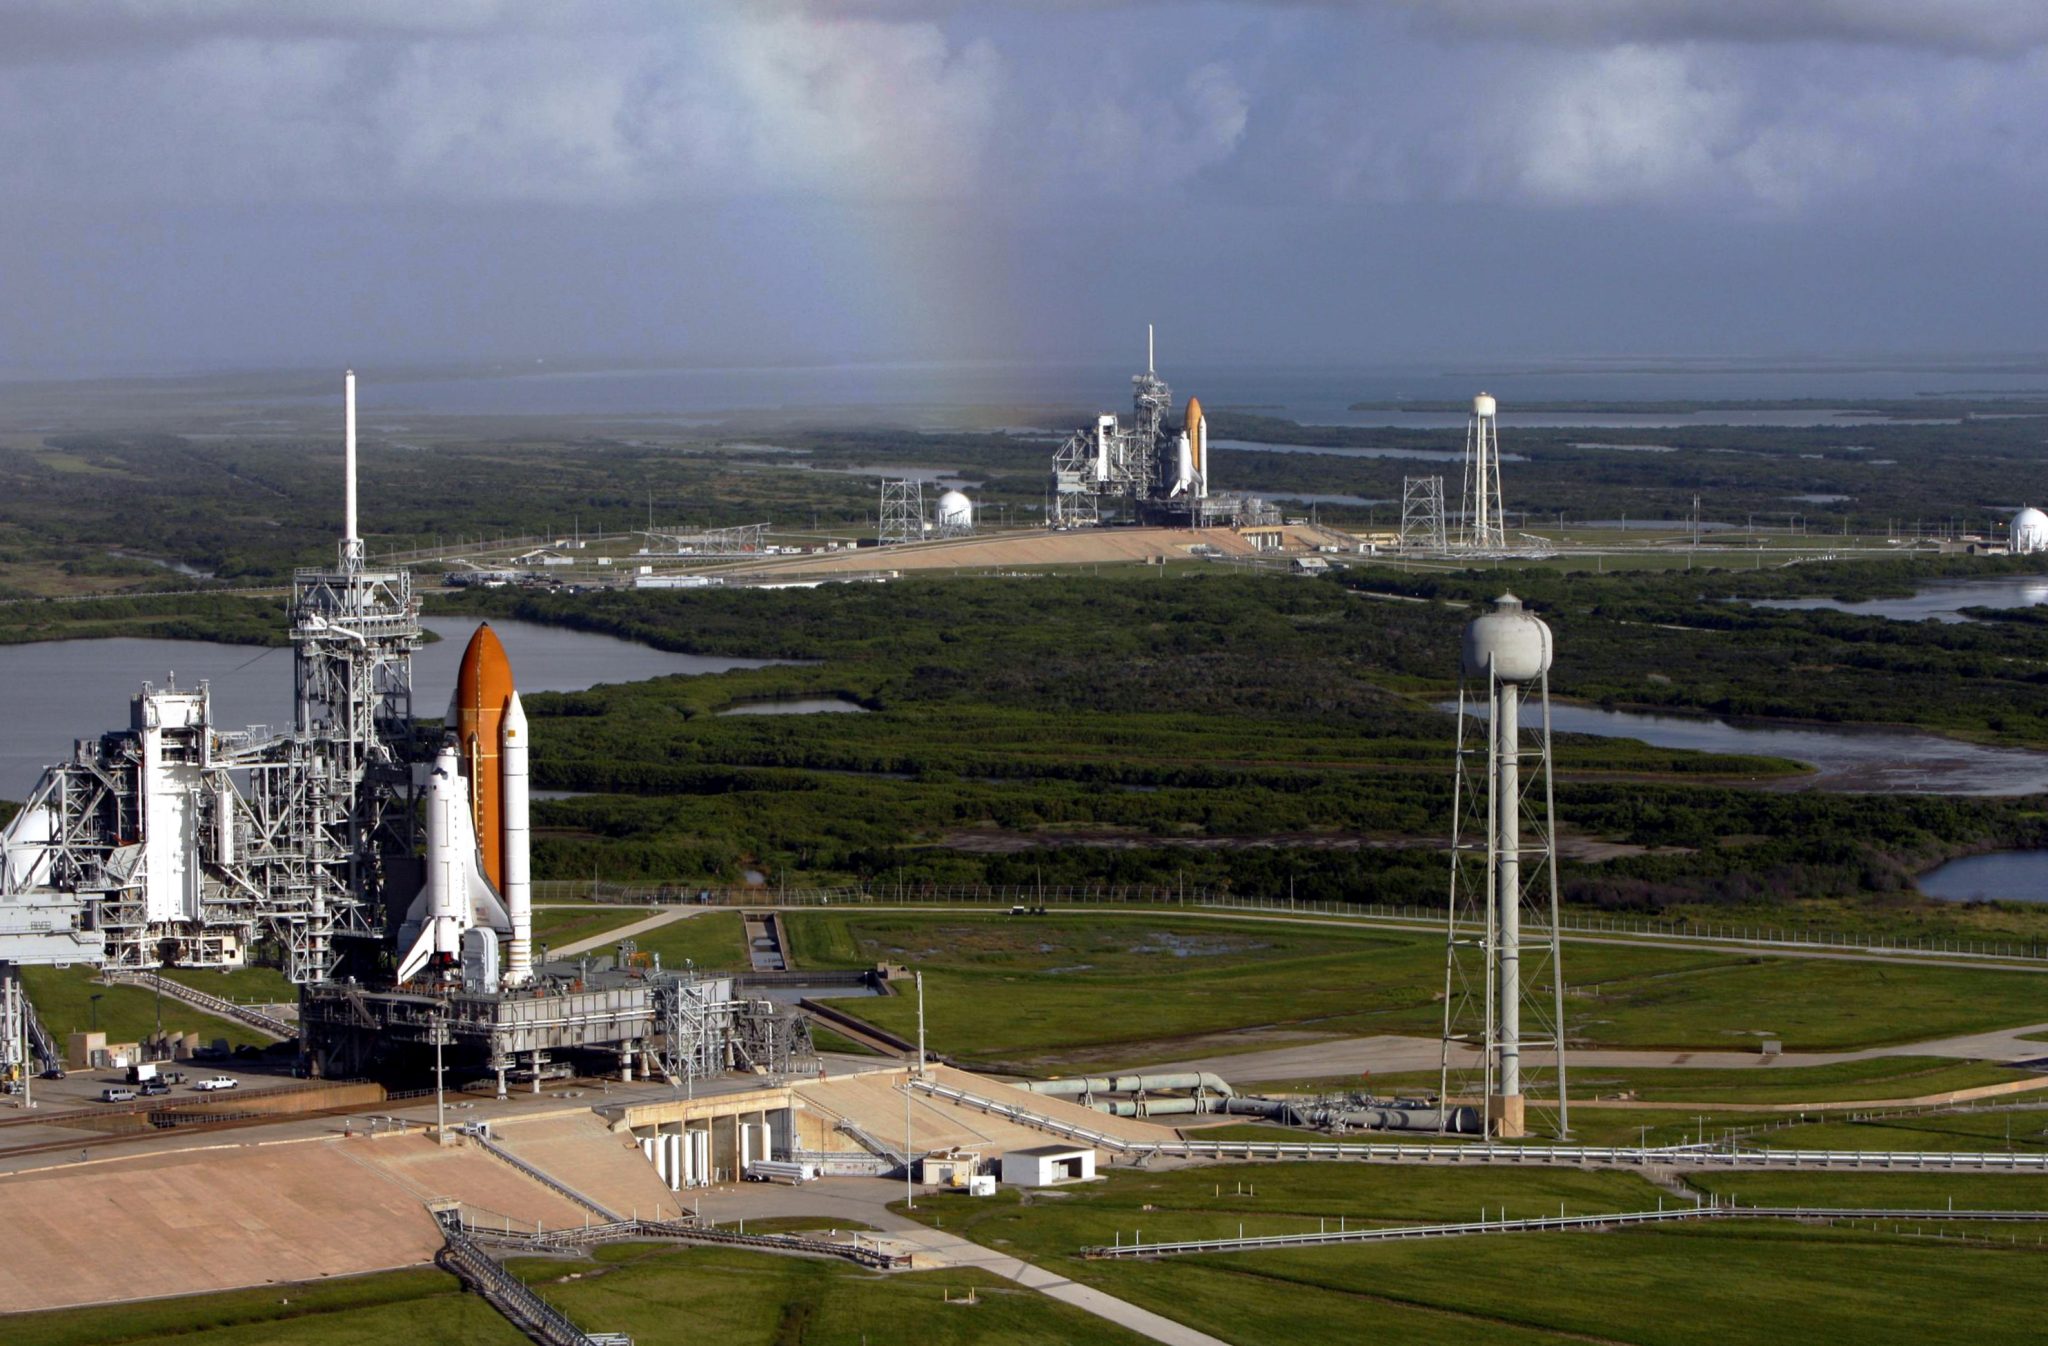 Atlantis STS-125 oraz Endeavour STS-400 jako misja ratunkowa (NASA)